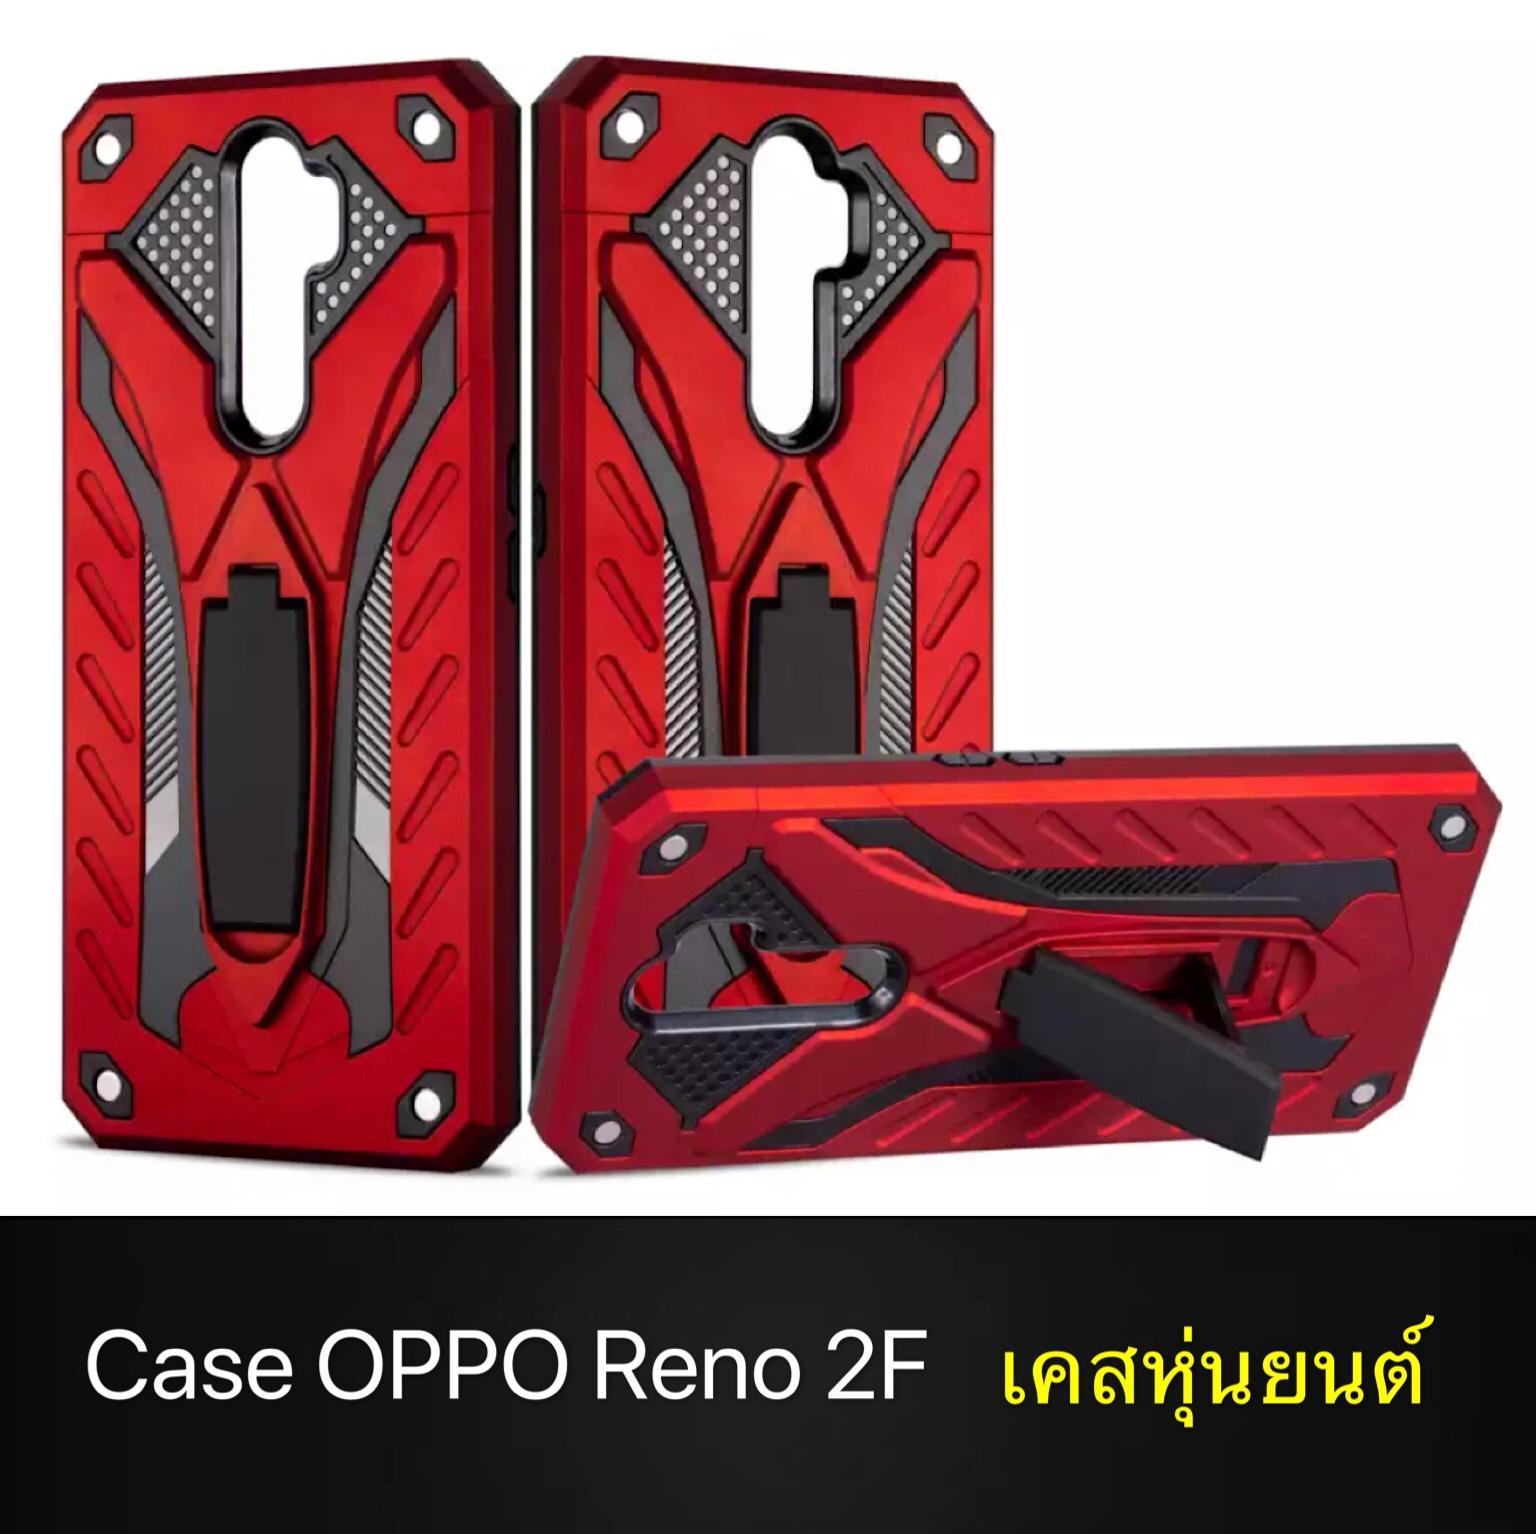 [สินค้าขายดี] Case OPPO Reno2F เคสออฟโป้ เคสหุ่นยนต์ เคส Oppo Reno 2F เคสไฮบริด มีขาตั้ง เคสกันกระแทก สินค้าใหม่ TPU CASE